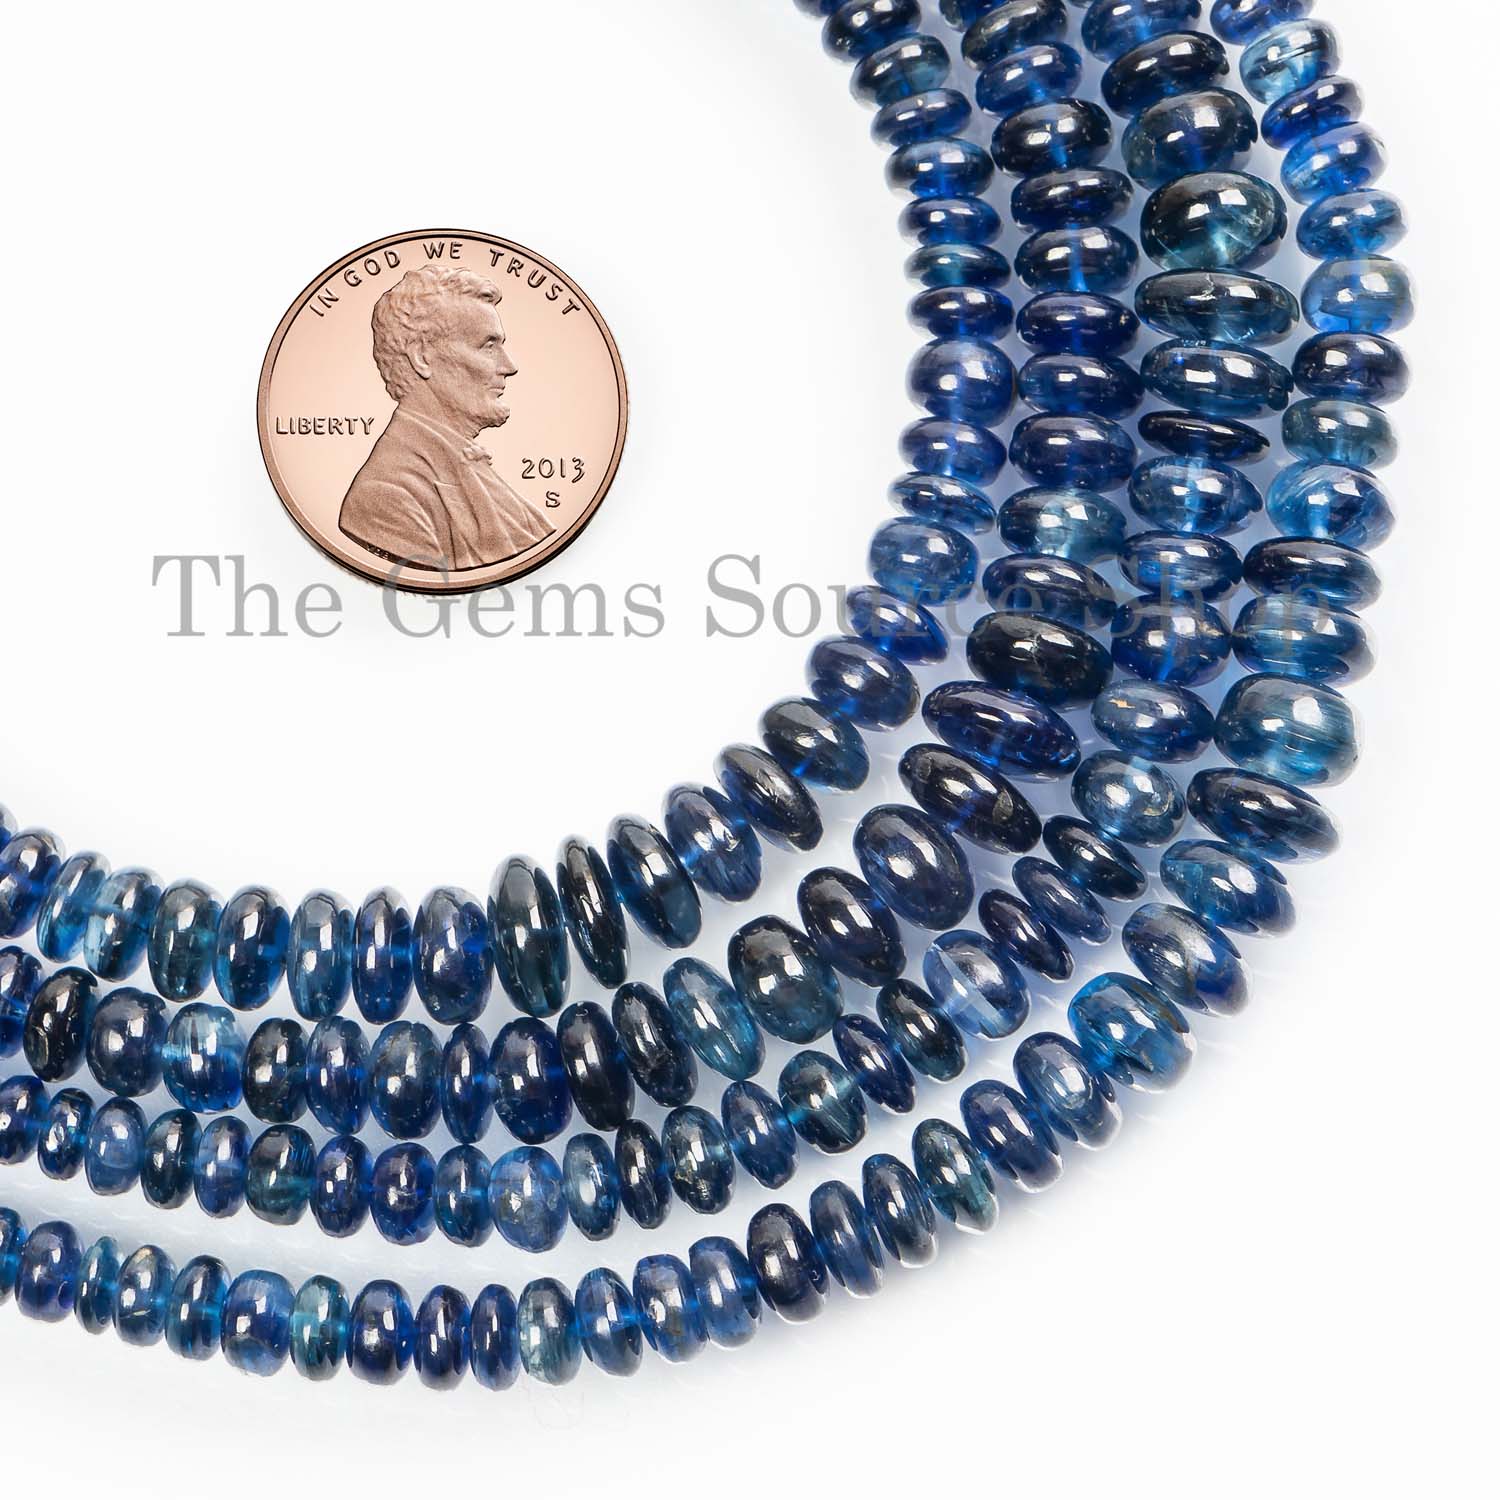 Kyanite Beads, Kyanite Rondelle Beads, Kyanite Smooth Beads, Kyanite Gemstone Beads